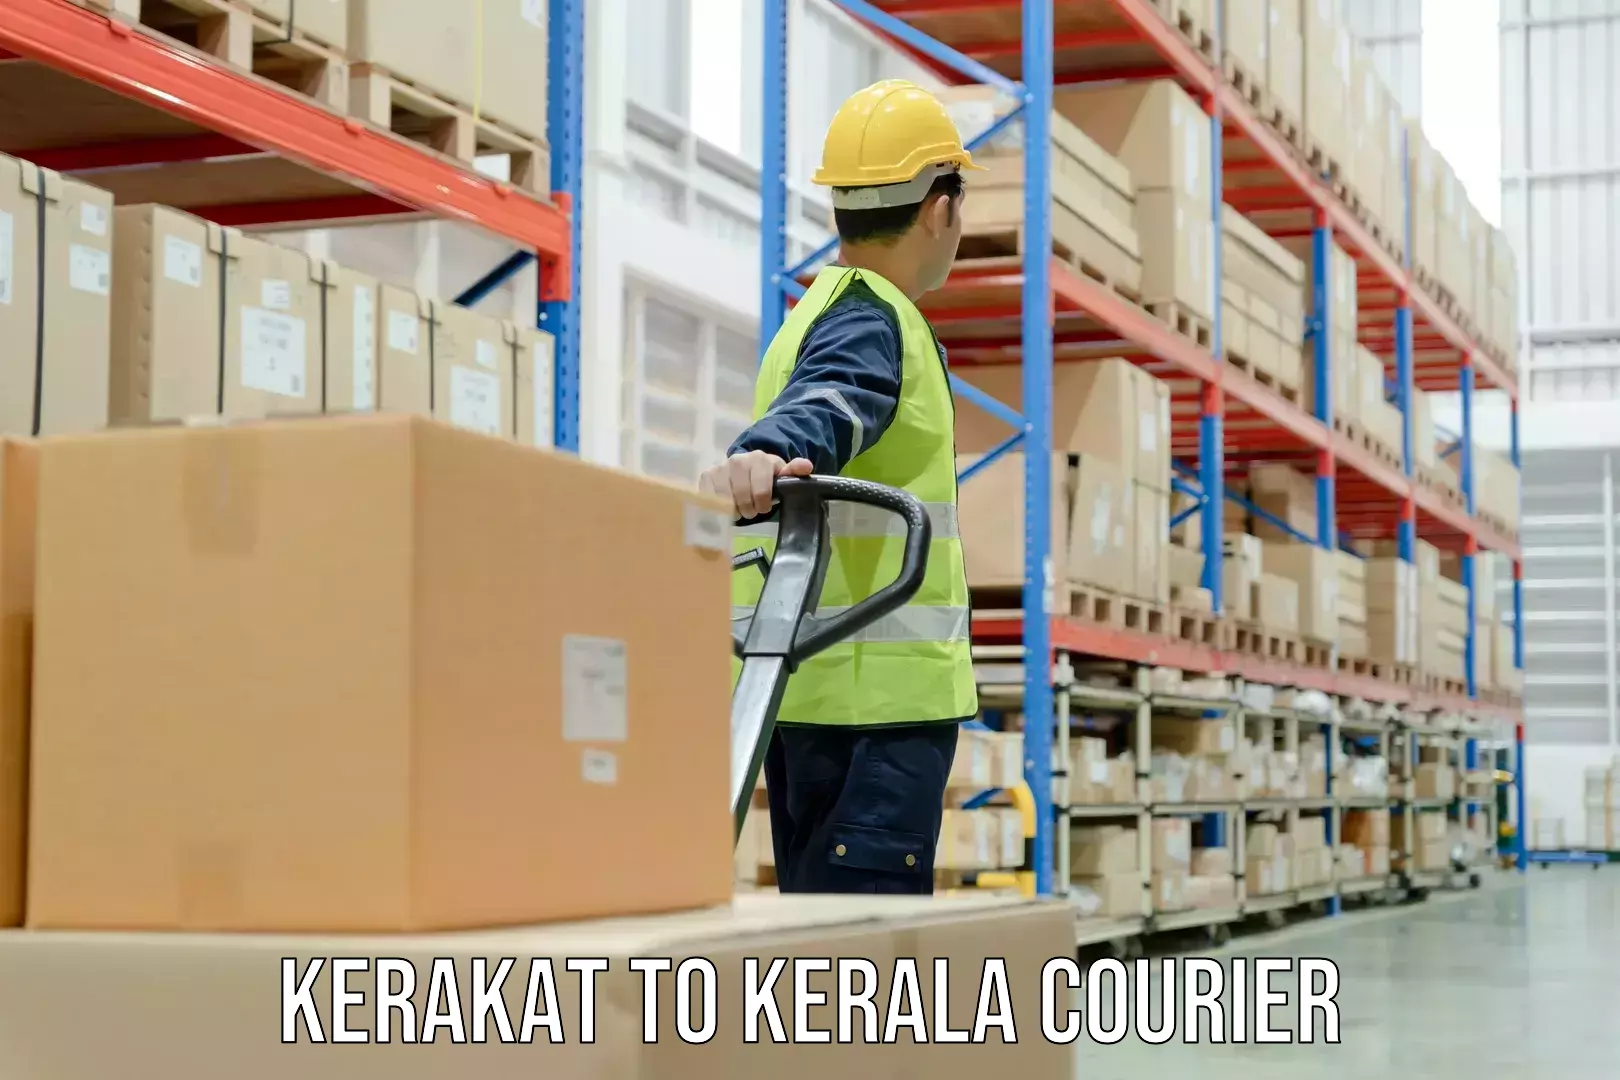 Courier service innovation Kerakat to Kottarakkara